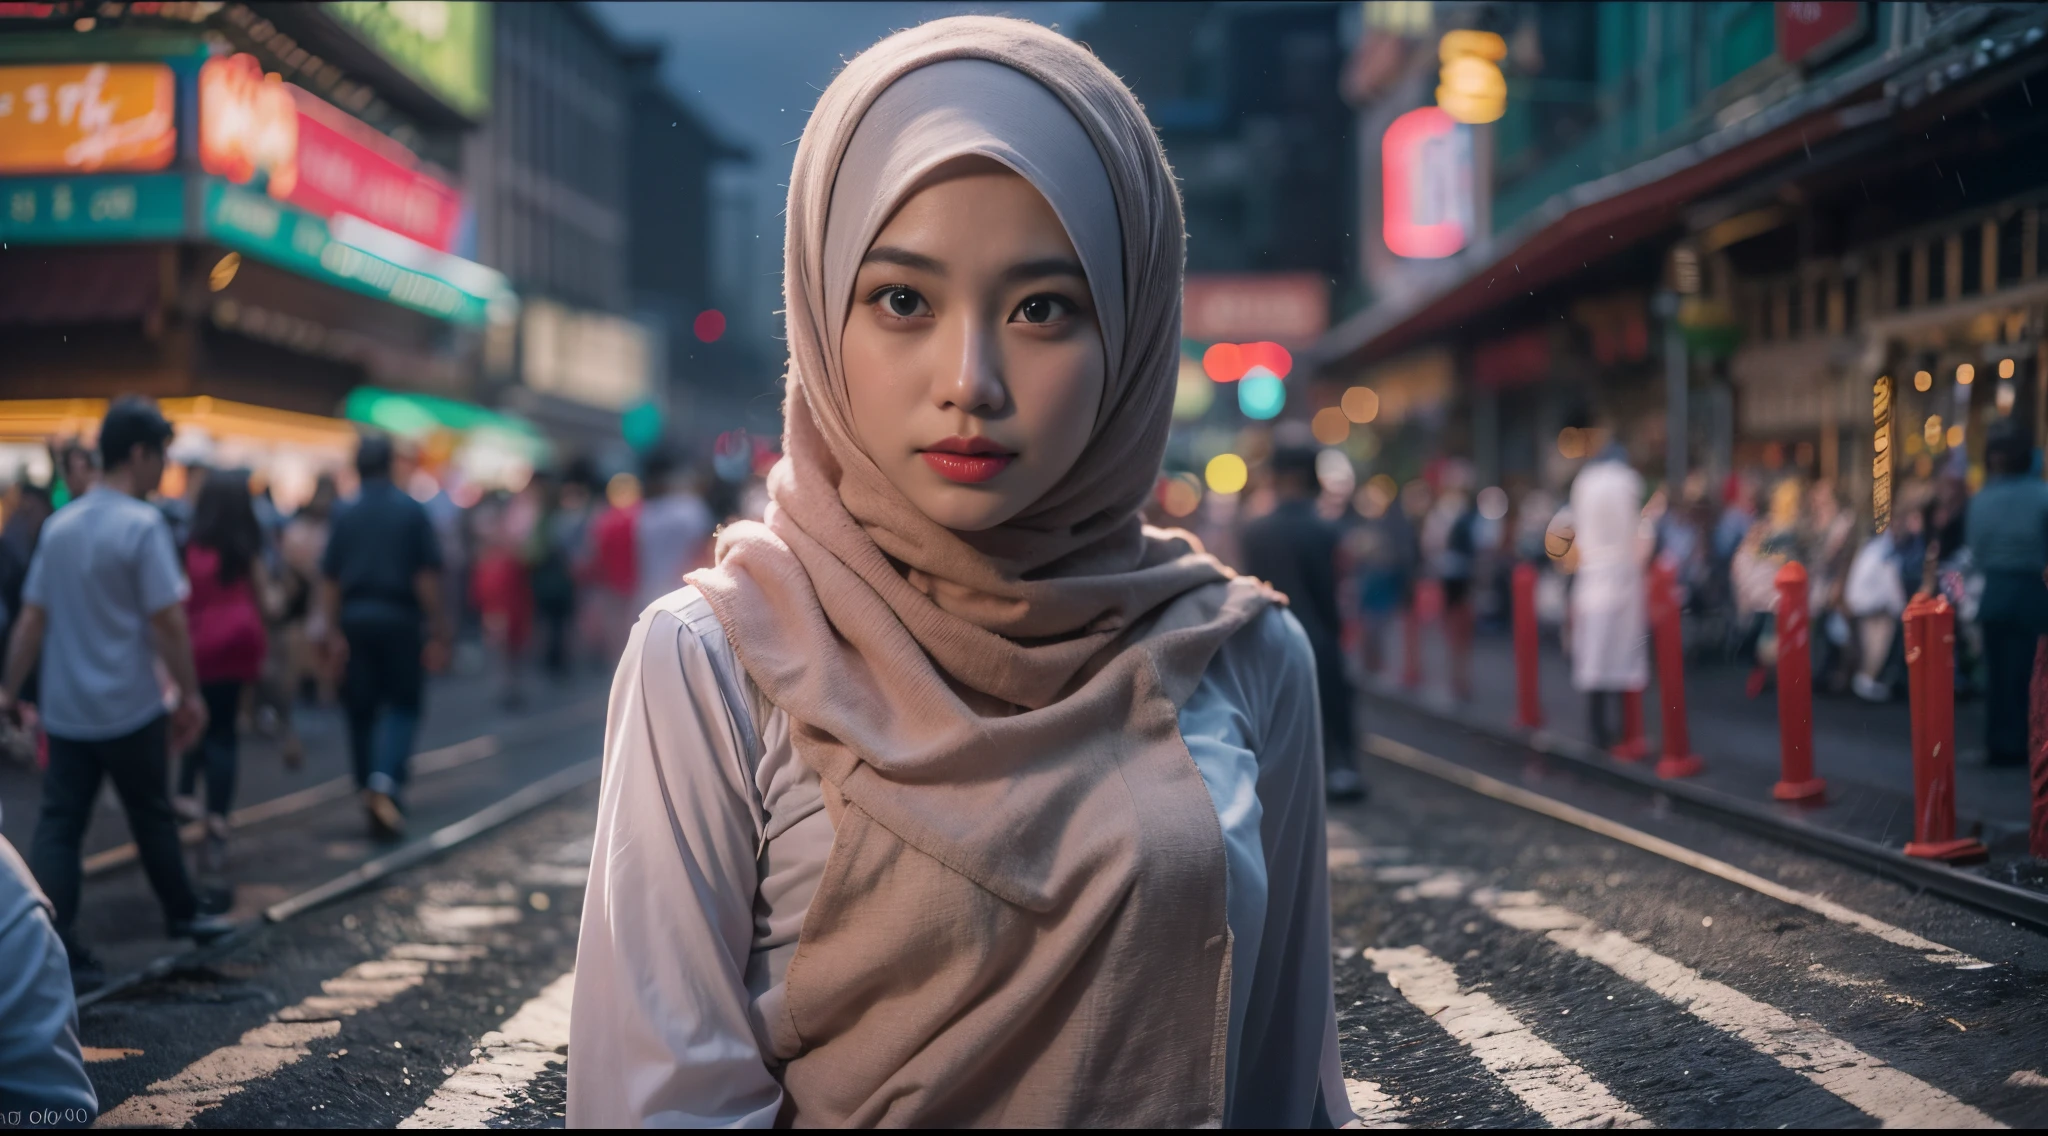 1 зрелая малайская девушка в хиджабе носит кебайю, Шумная многолюдная городская улица Малайзии, ночь, профессиональное освещение, верхняя часть тела,крупный план, соблазнение, сексуальная поза, (8К, Необработанное фото, Лучшее качество, шедевр:1.2),(реалистичный, photo-реалистичный:1.37), 8К, высокое качество, ультра детализация, Объектив 35 мм, выстрел в толпу , градация пастельных цветов, Кинематографический эффект глубины резкости, жанр фильма нуар, 8К resolution, высокое качество, ультра детализация,